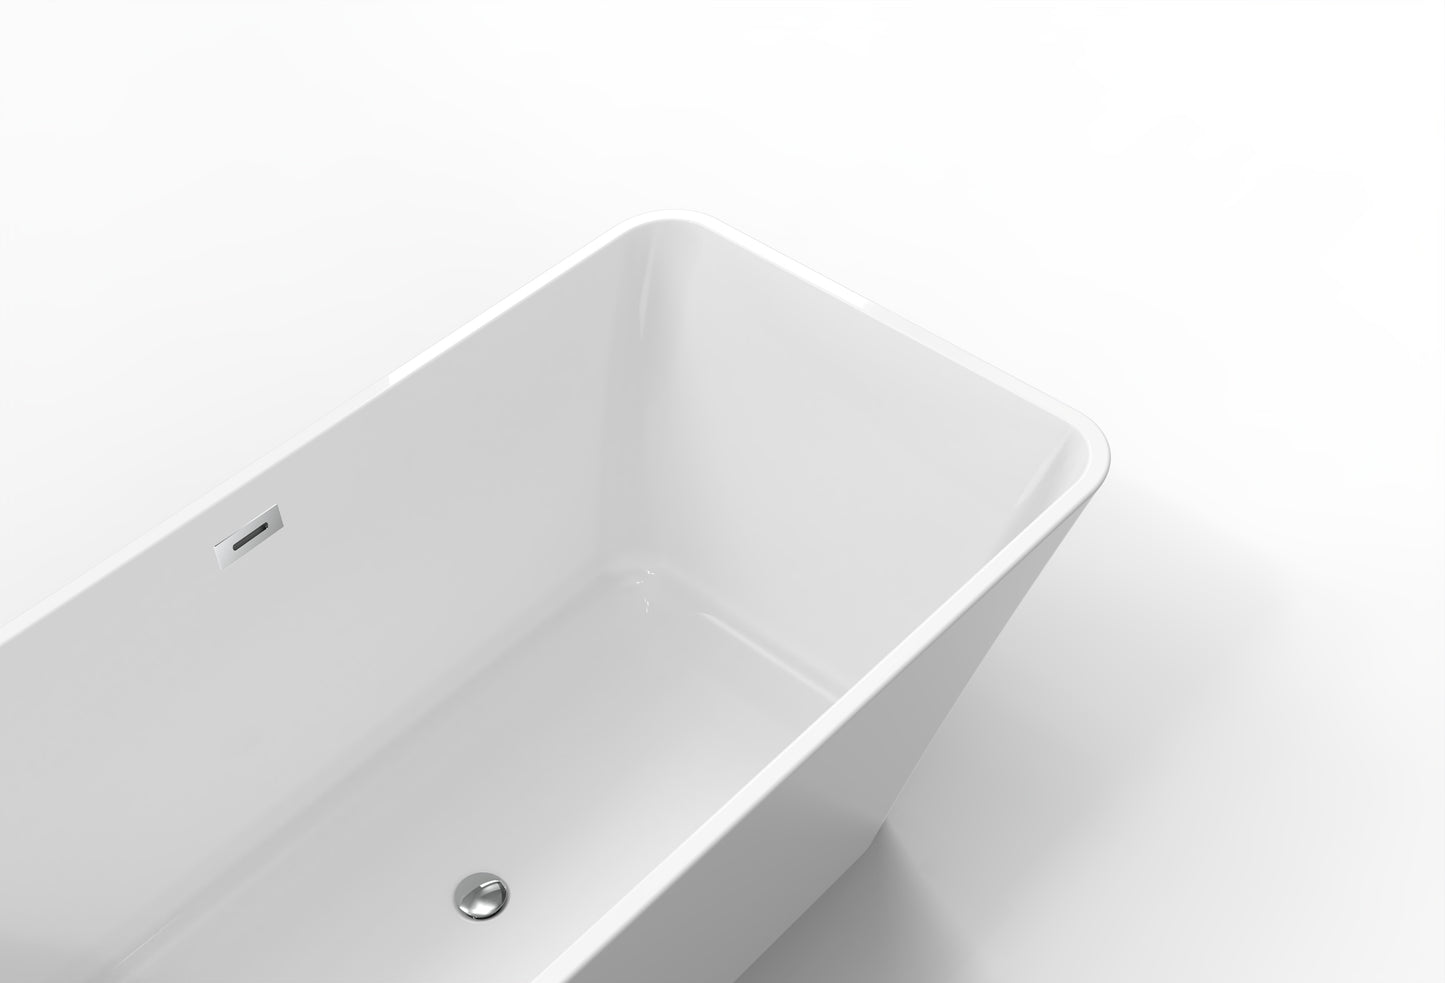 BAUHAUS AURA Freestanding Bath Tub - White - 1600 x 750 x 580mm